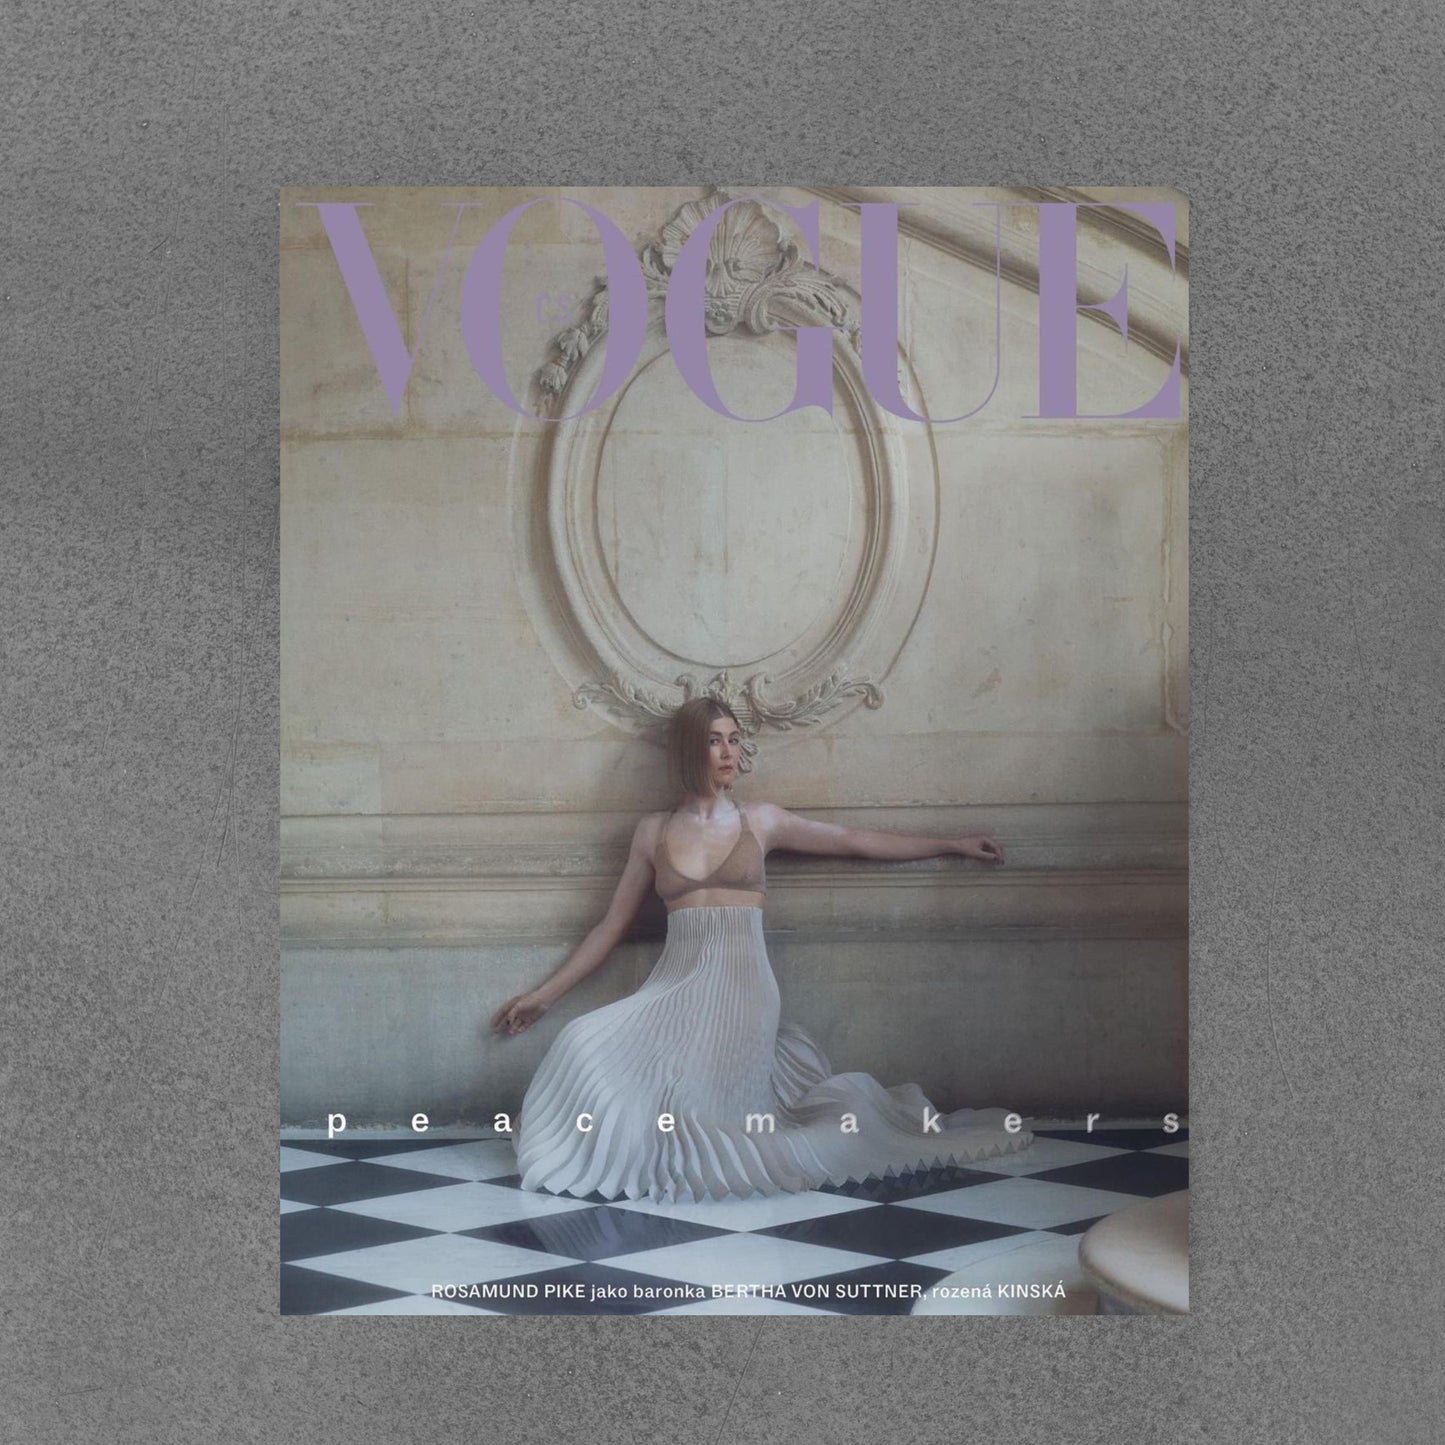 Vogue mag issue 35 12/21